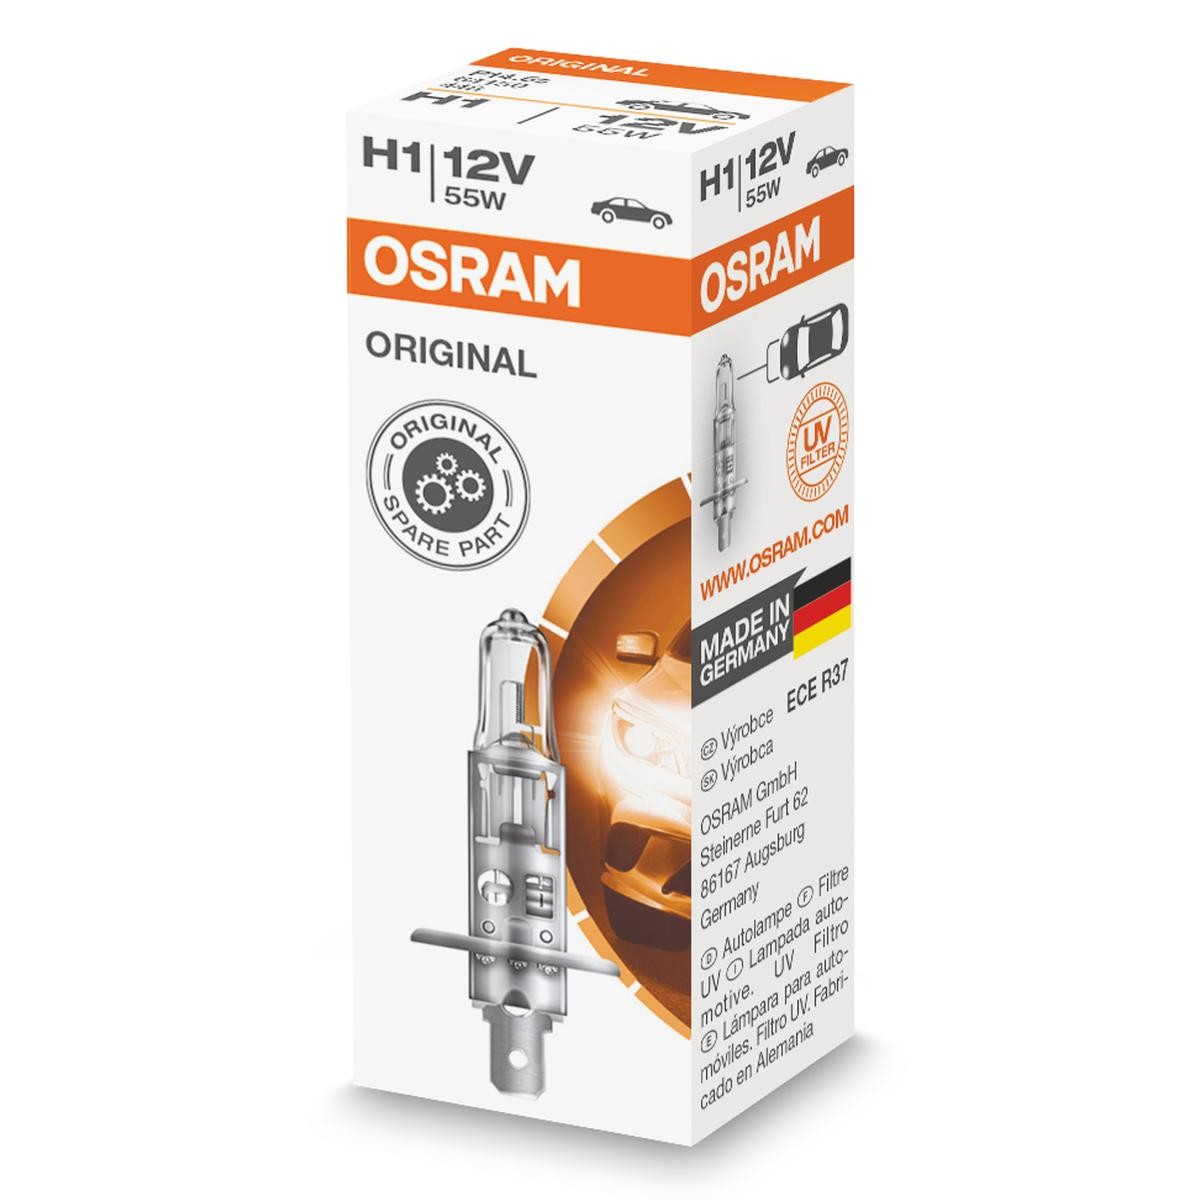 Achat de H1 OSRAM ORIGINAL H1 12V 55W3200K Halogène Ampoule, projecteur longue portée 64150 bon marché